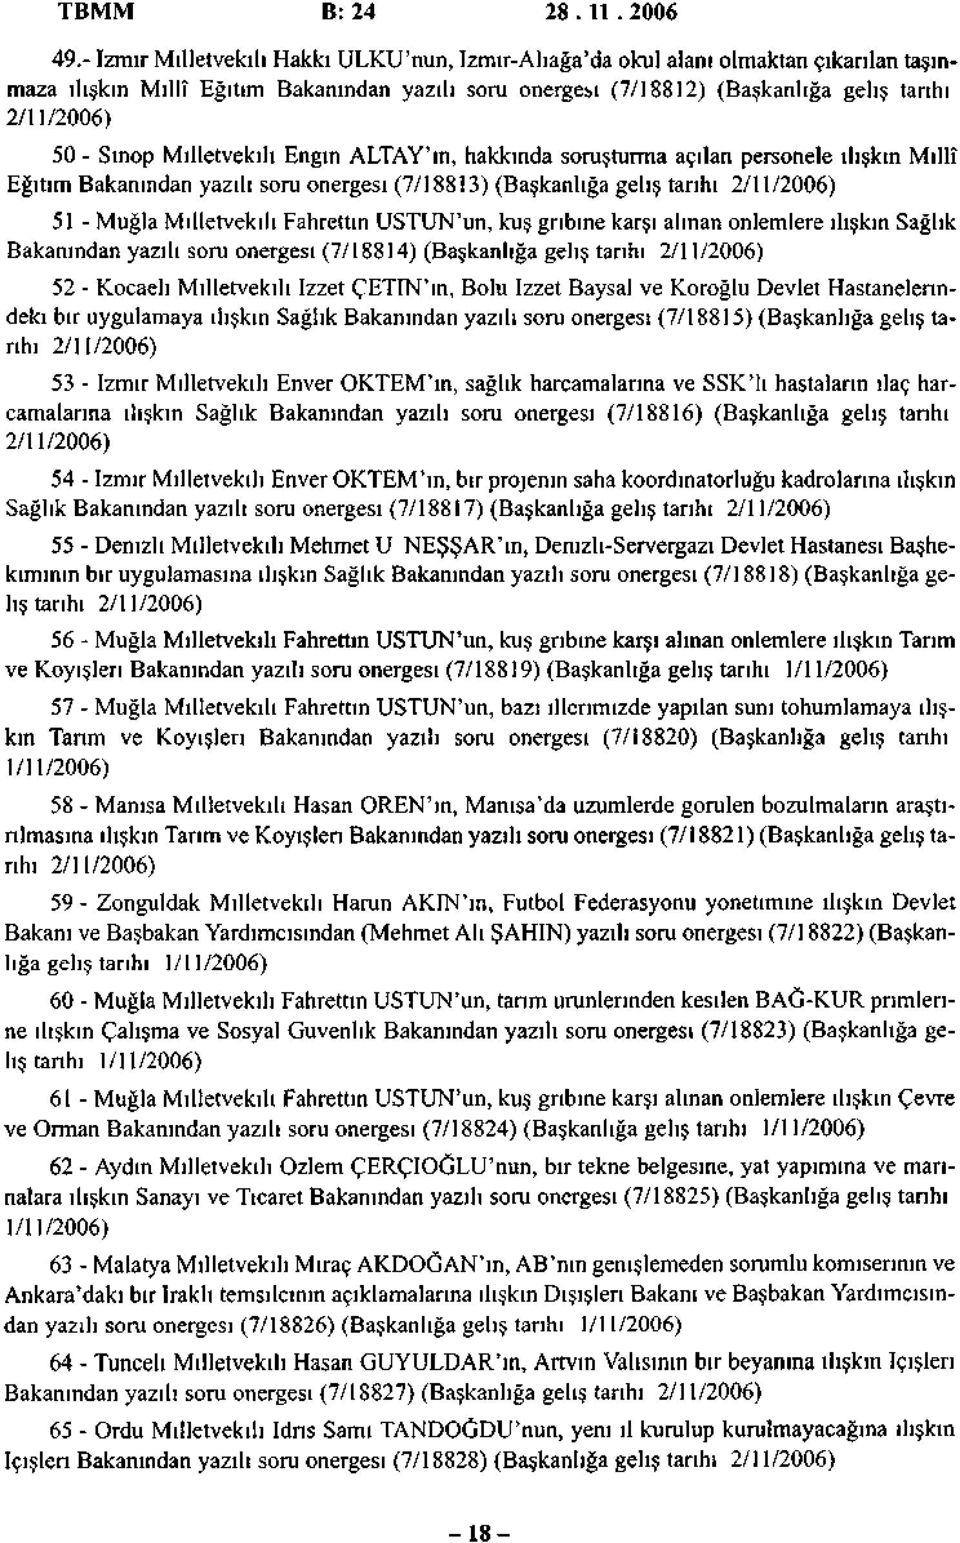 Sinop Milletvekili Engin ALTAY'ın, hakkında soruşturma açılan personele ilişkin Millî Eğitim Bakanından yazılı soru önergesi (7/188İ3) (Başkanlığa geliş tanhı 2/11/2006) 51 - Muğla Milletvekili